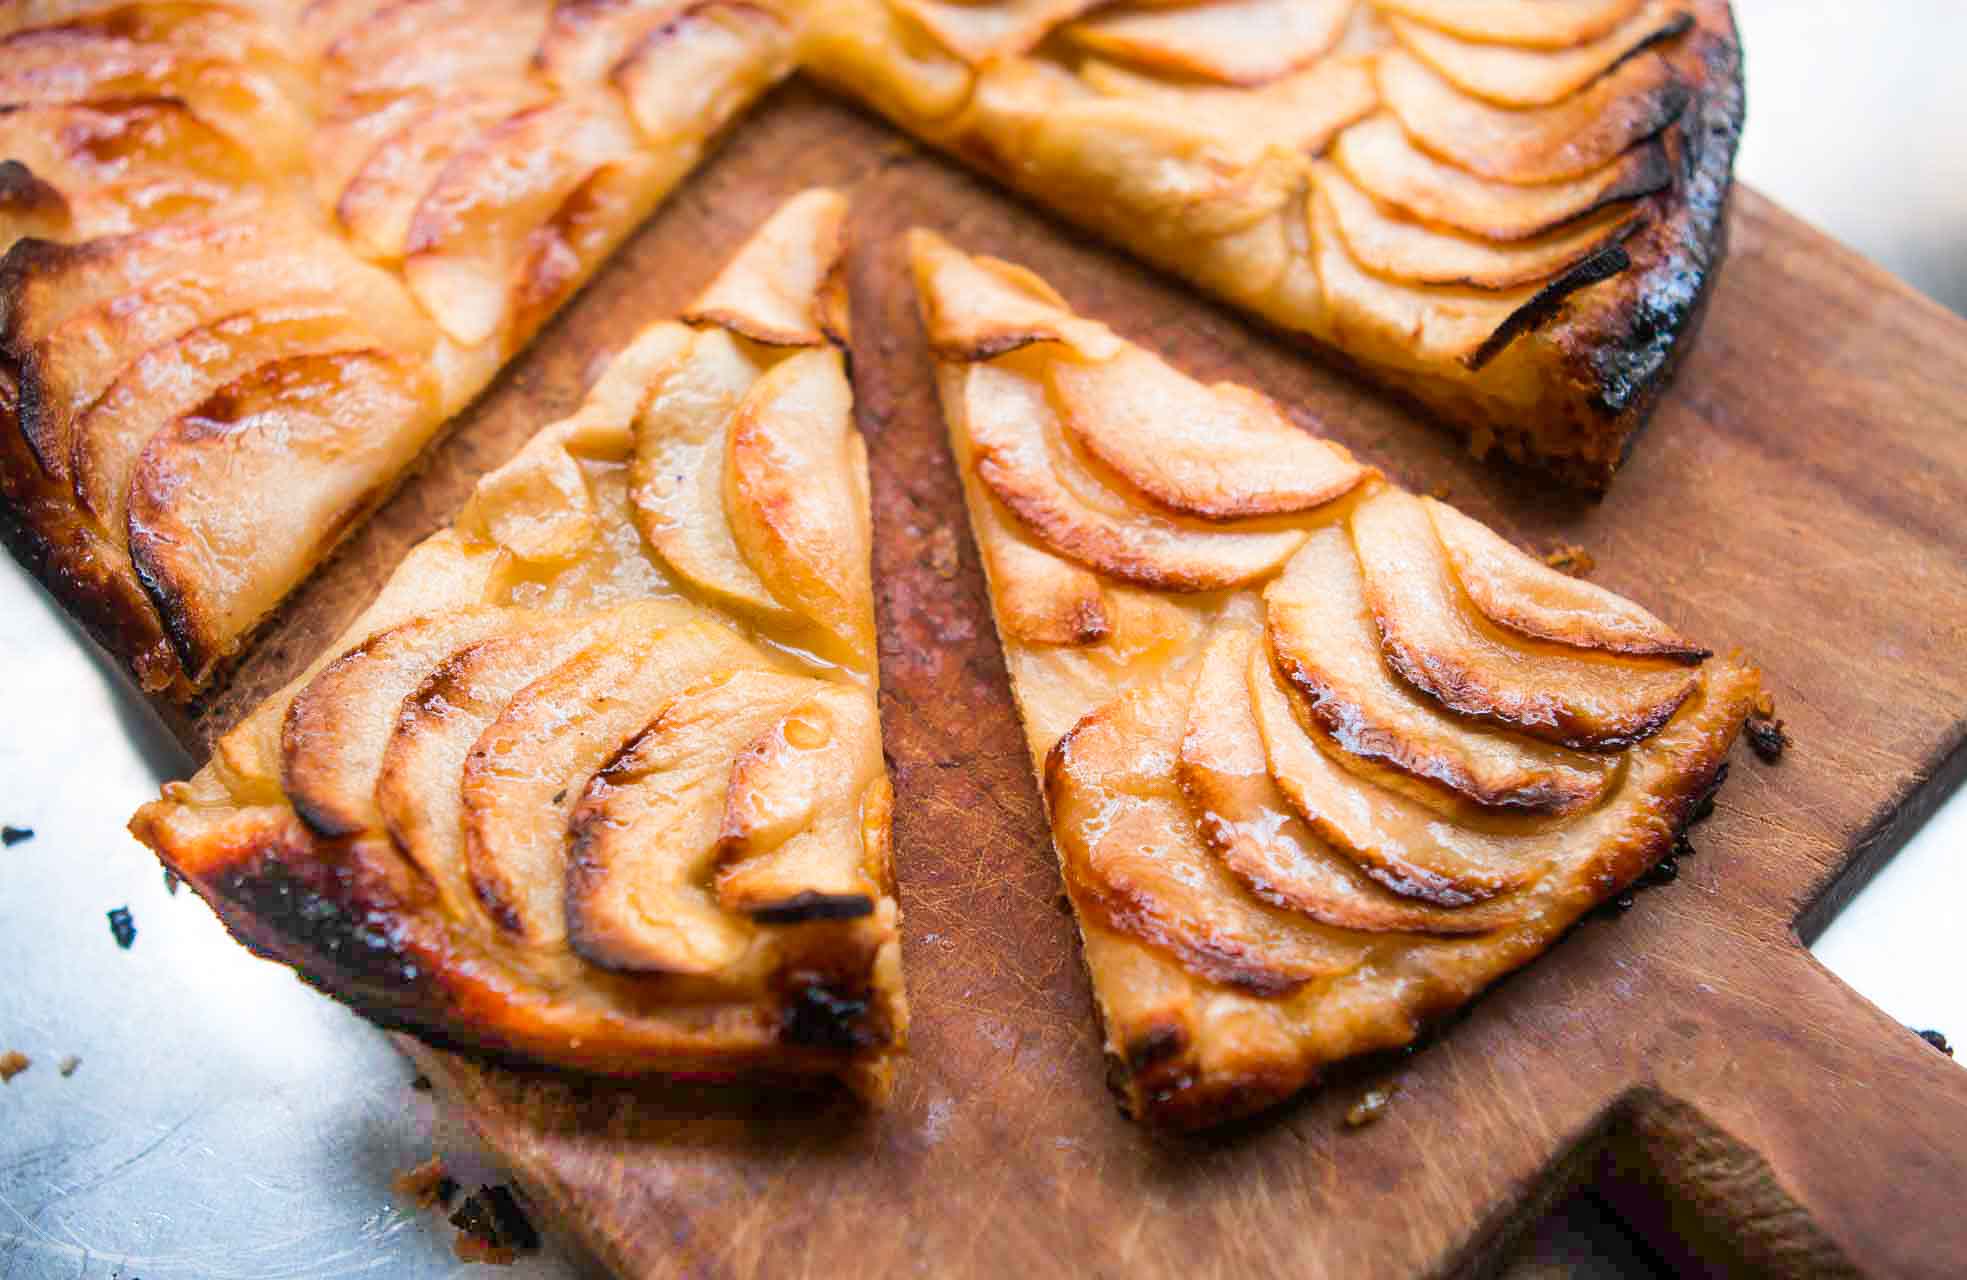 https://www.davidlebovitz.com/wp-content/uploads/2020/11/French-apple-tart-tarte-fine-recipe.jpg